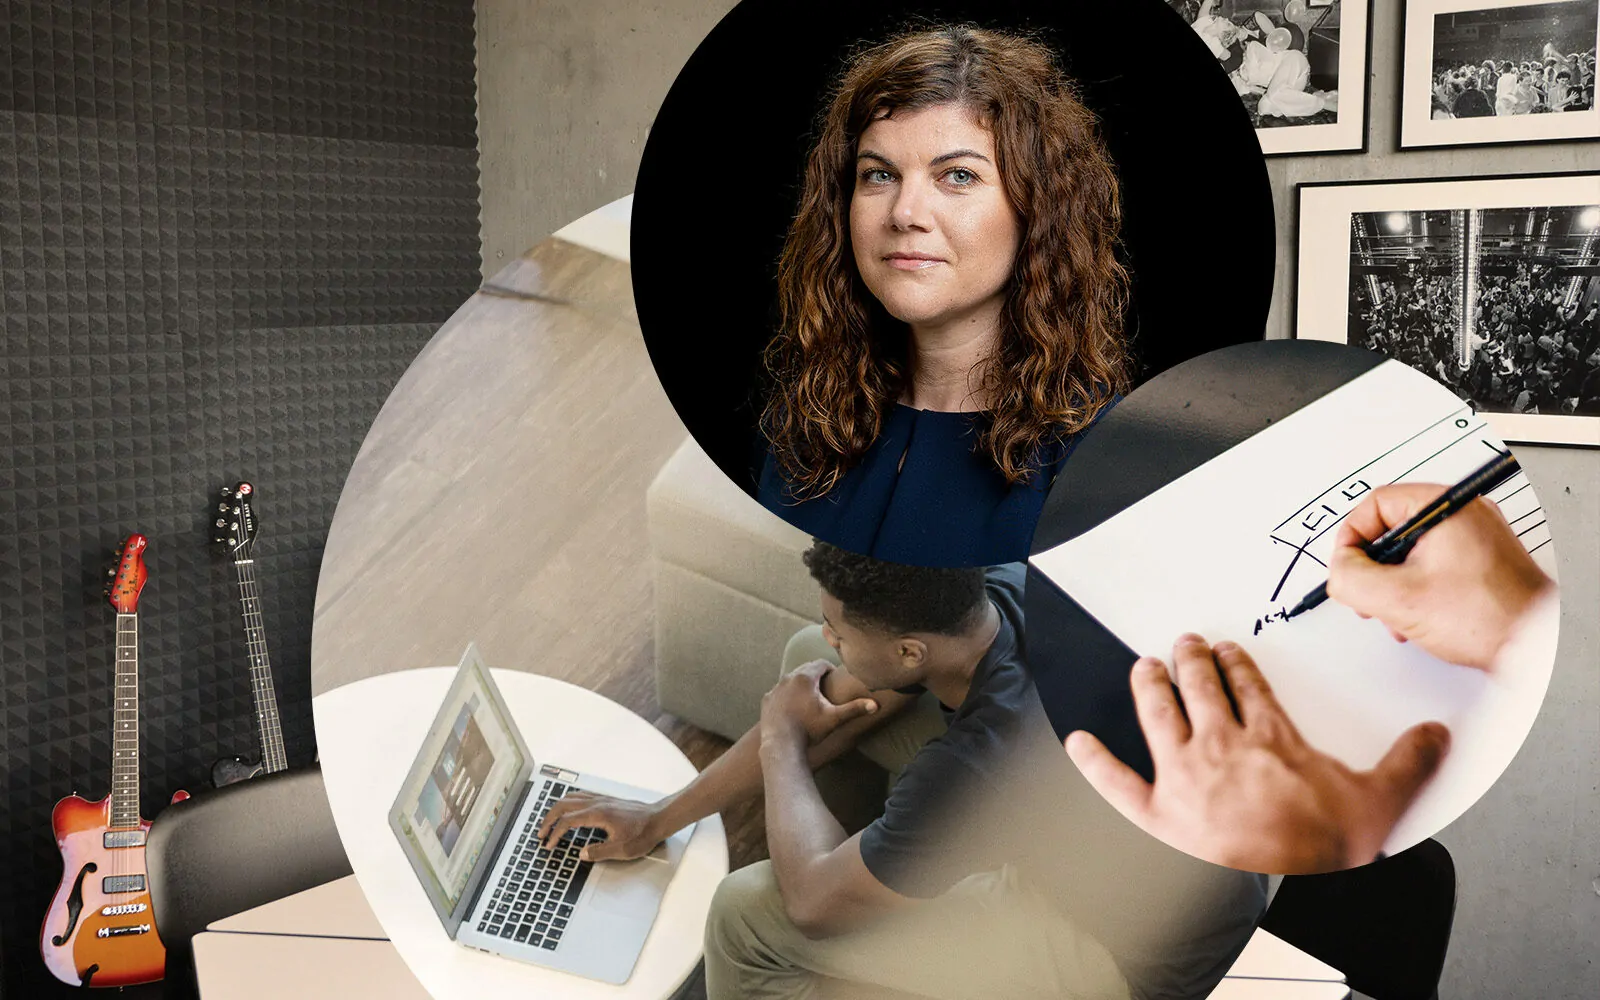 Bild von Elena Gocheva, Director of UX Strategy bei valantic, daneben eine Person, die auf ein Laptop tippt, eine Person, die etwas zeichnet | User Testing: Besser vor Ort oder remote?